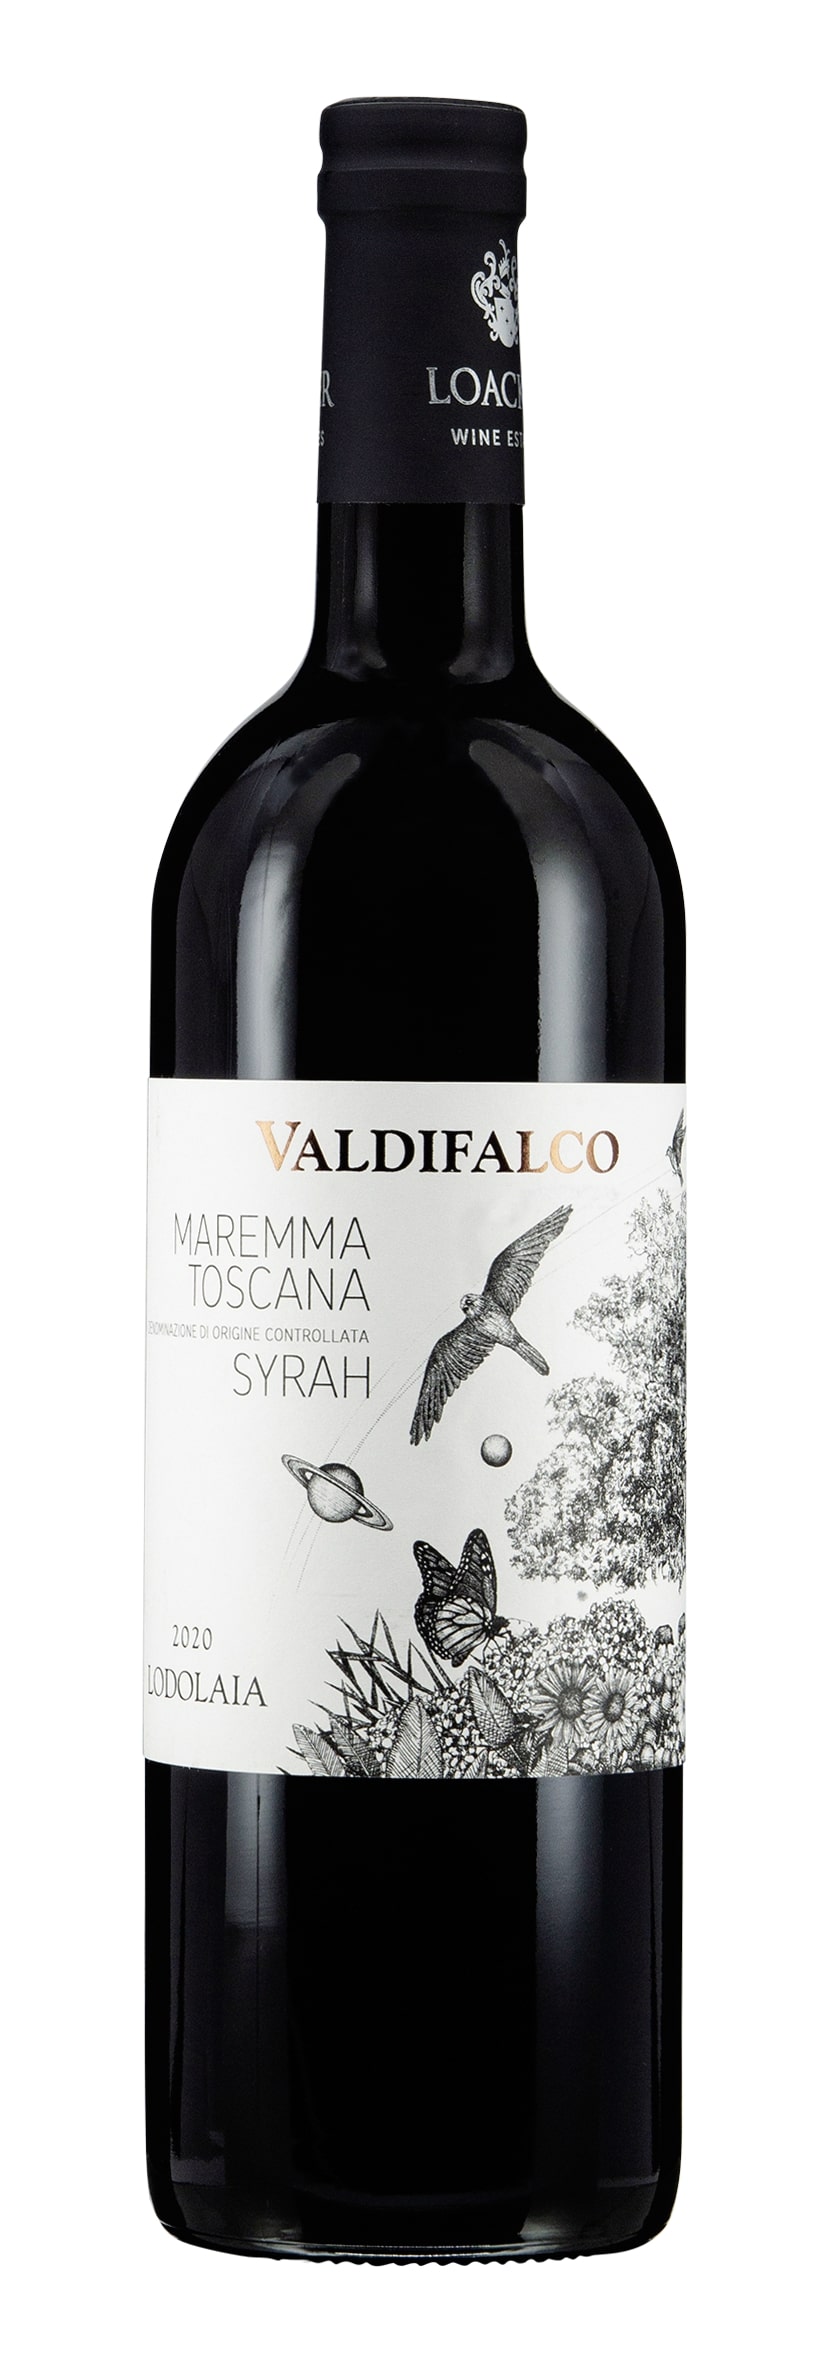 Maremma Toscana DOC Syrah Valdifalco Lodolaia 2020